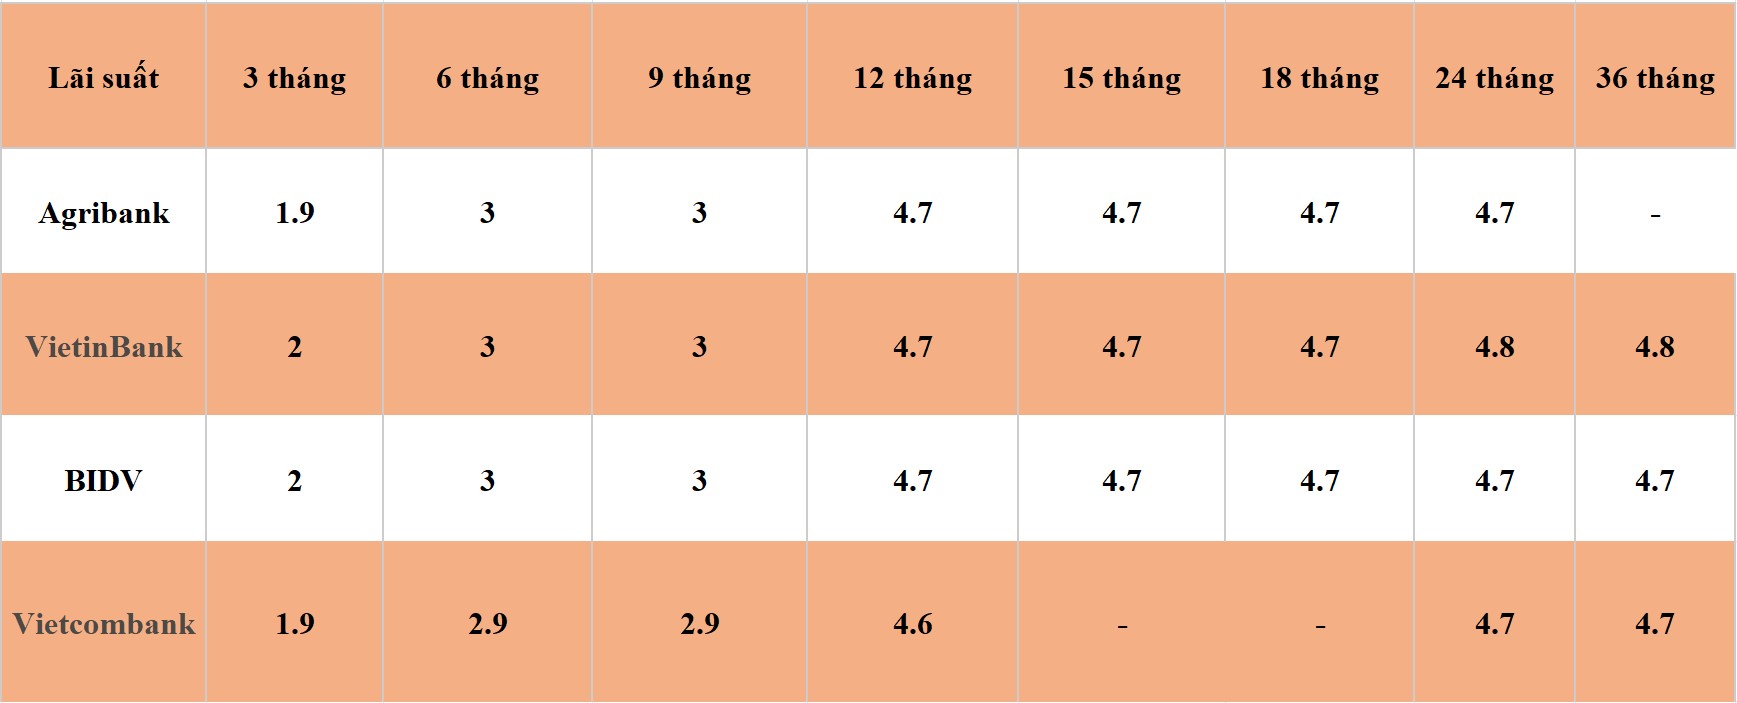 Bảng so sánh lãi suất các kỳ hạn tại Vietcombank, Agribank, VietinBank và BIDV. Số liệu ghi nhận đầu giờ sáng ngày 13.4.2024. Đơn vị tính: %/năm. Bảng: Khương Duy  